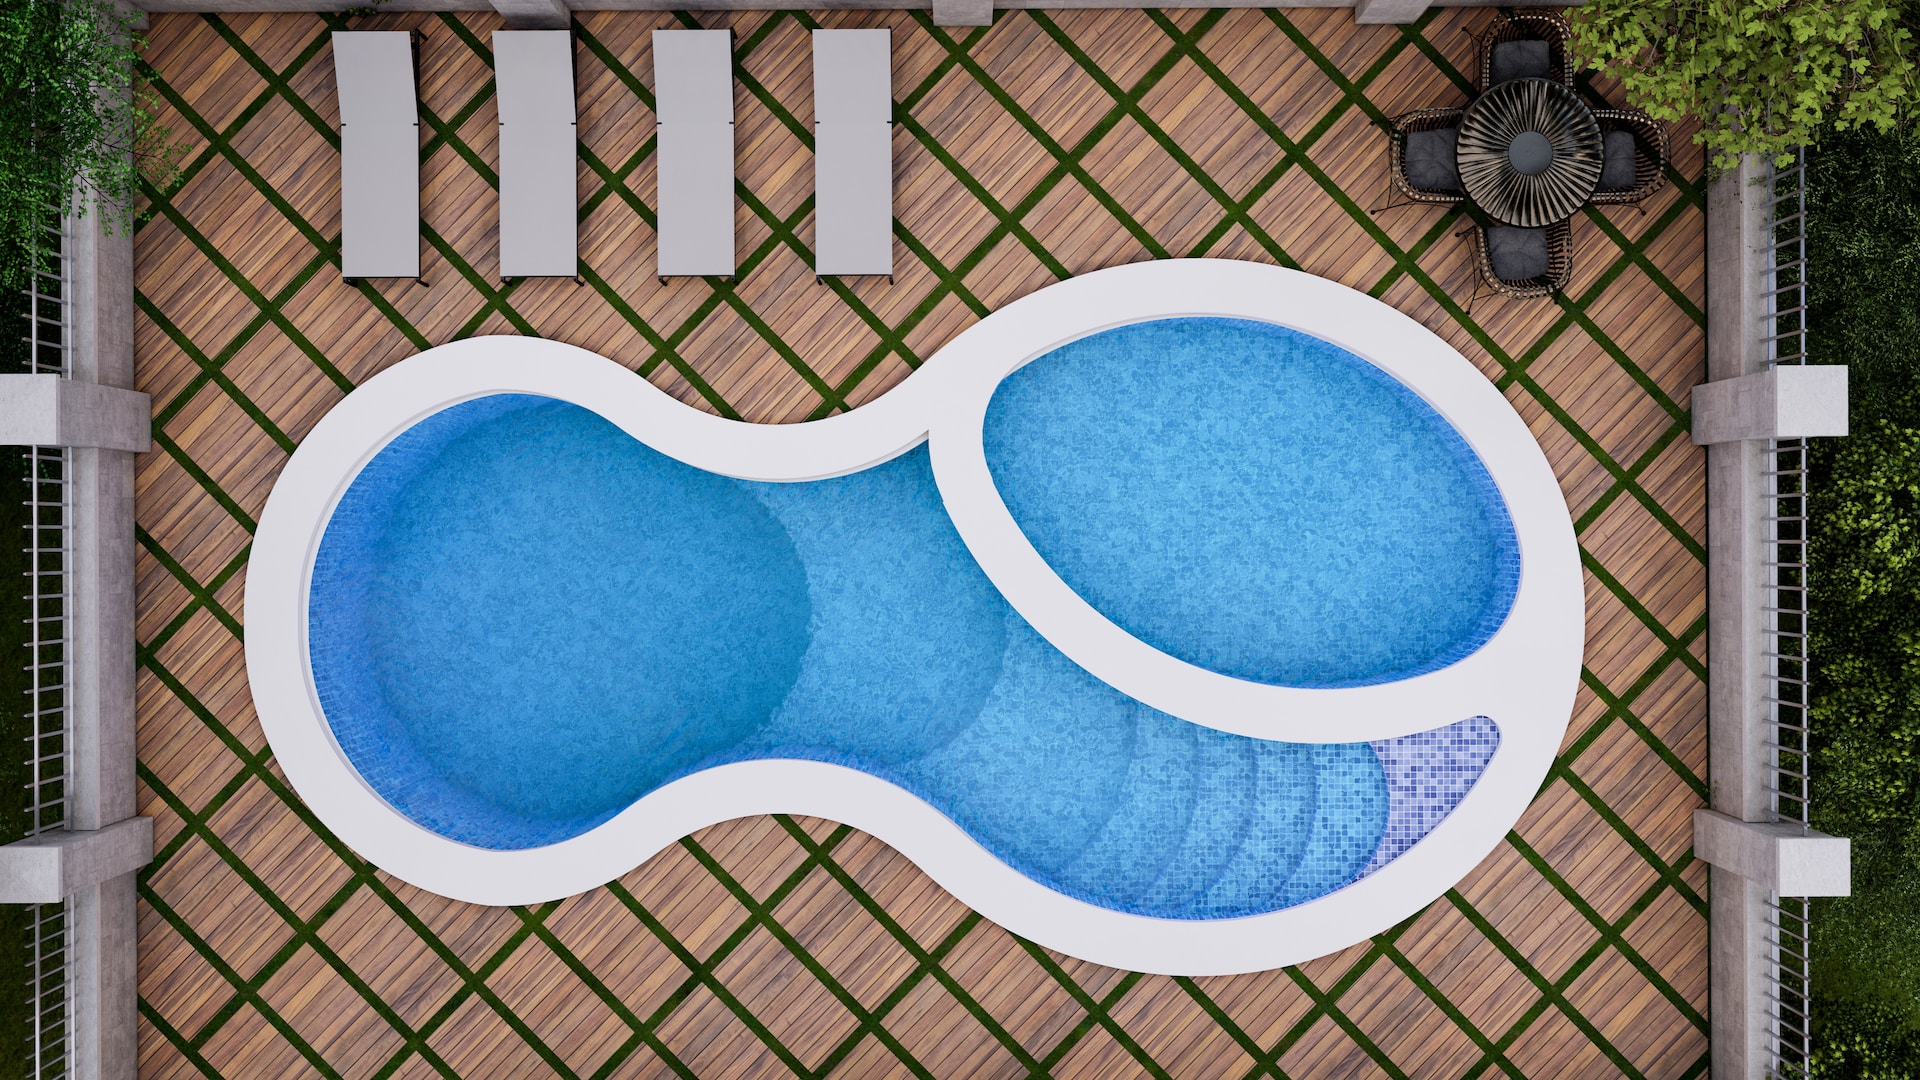 La elección inteligente: piscinas prefabricadas elevadas